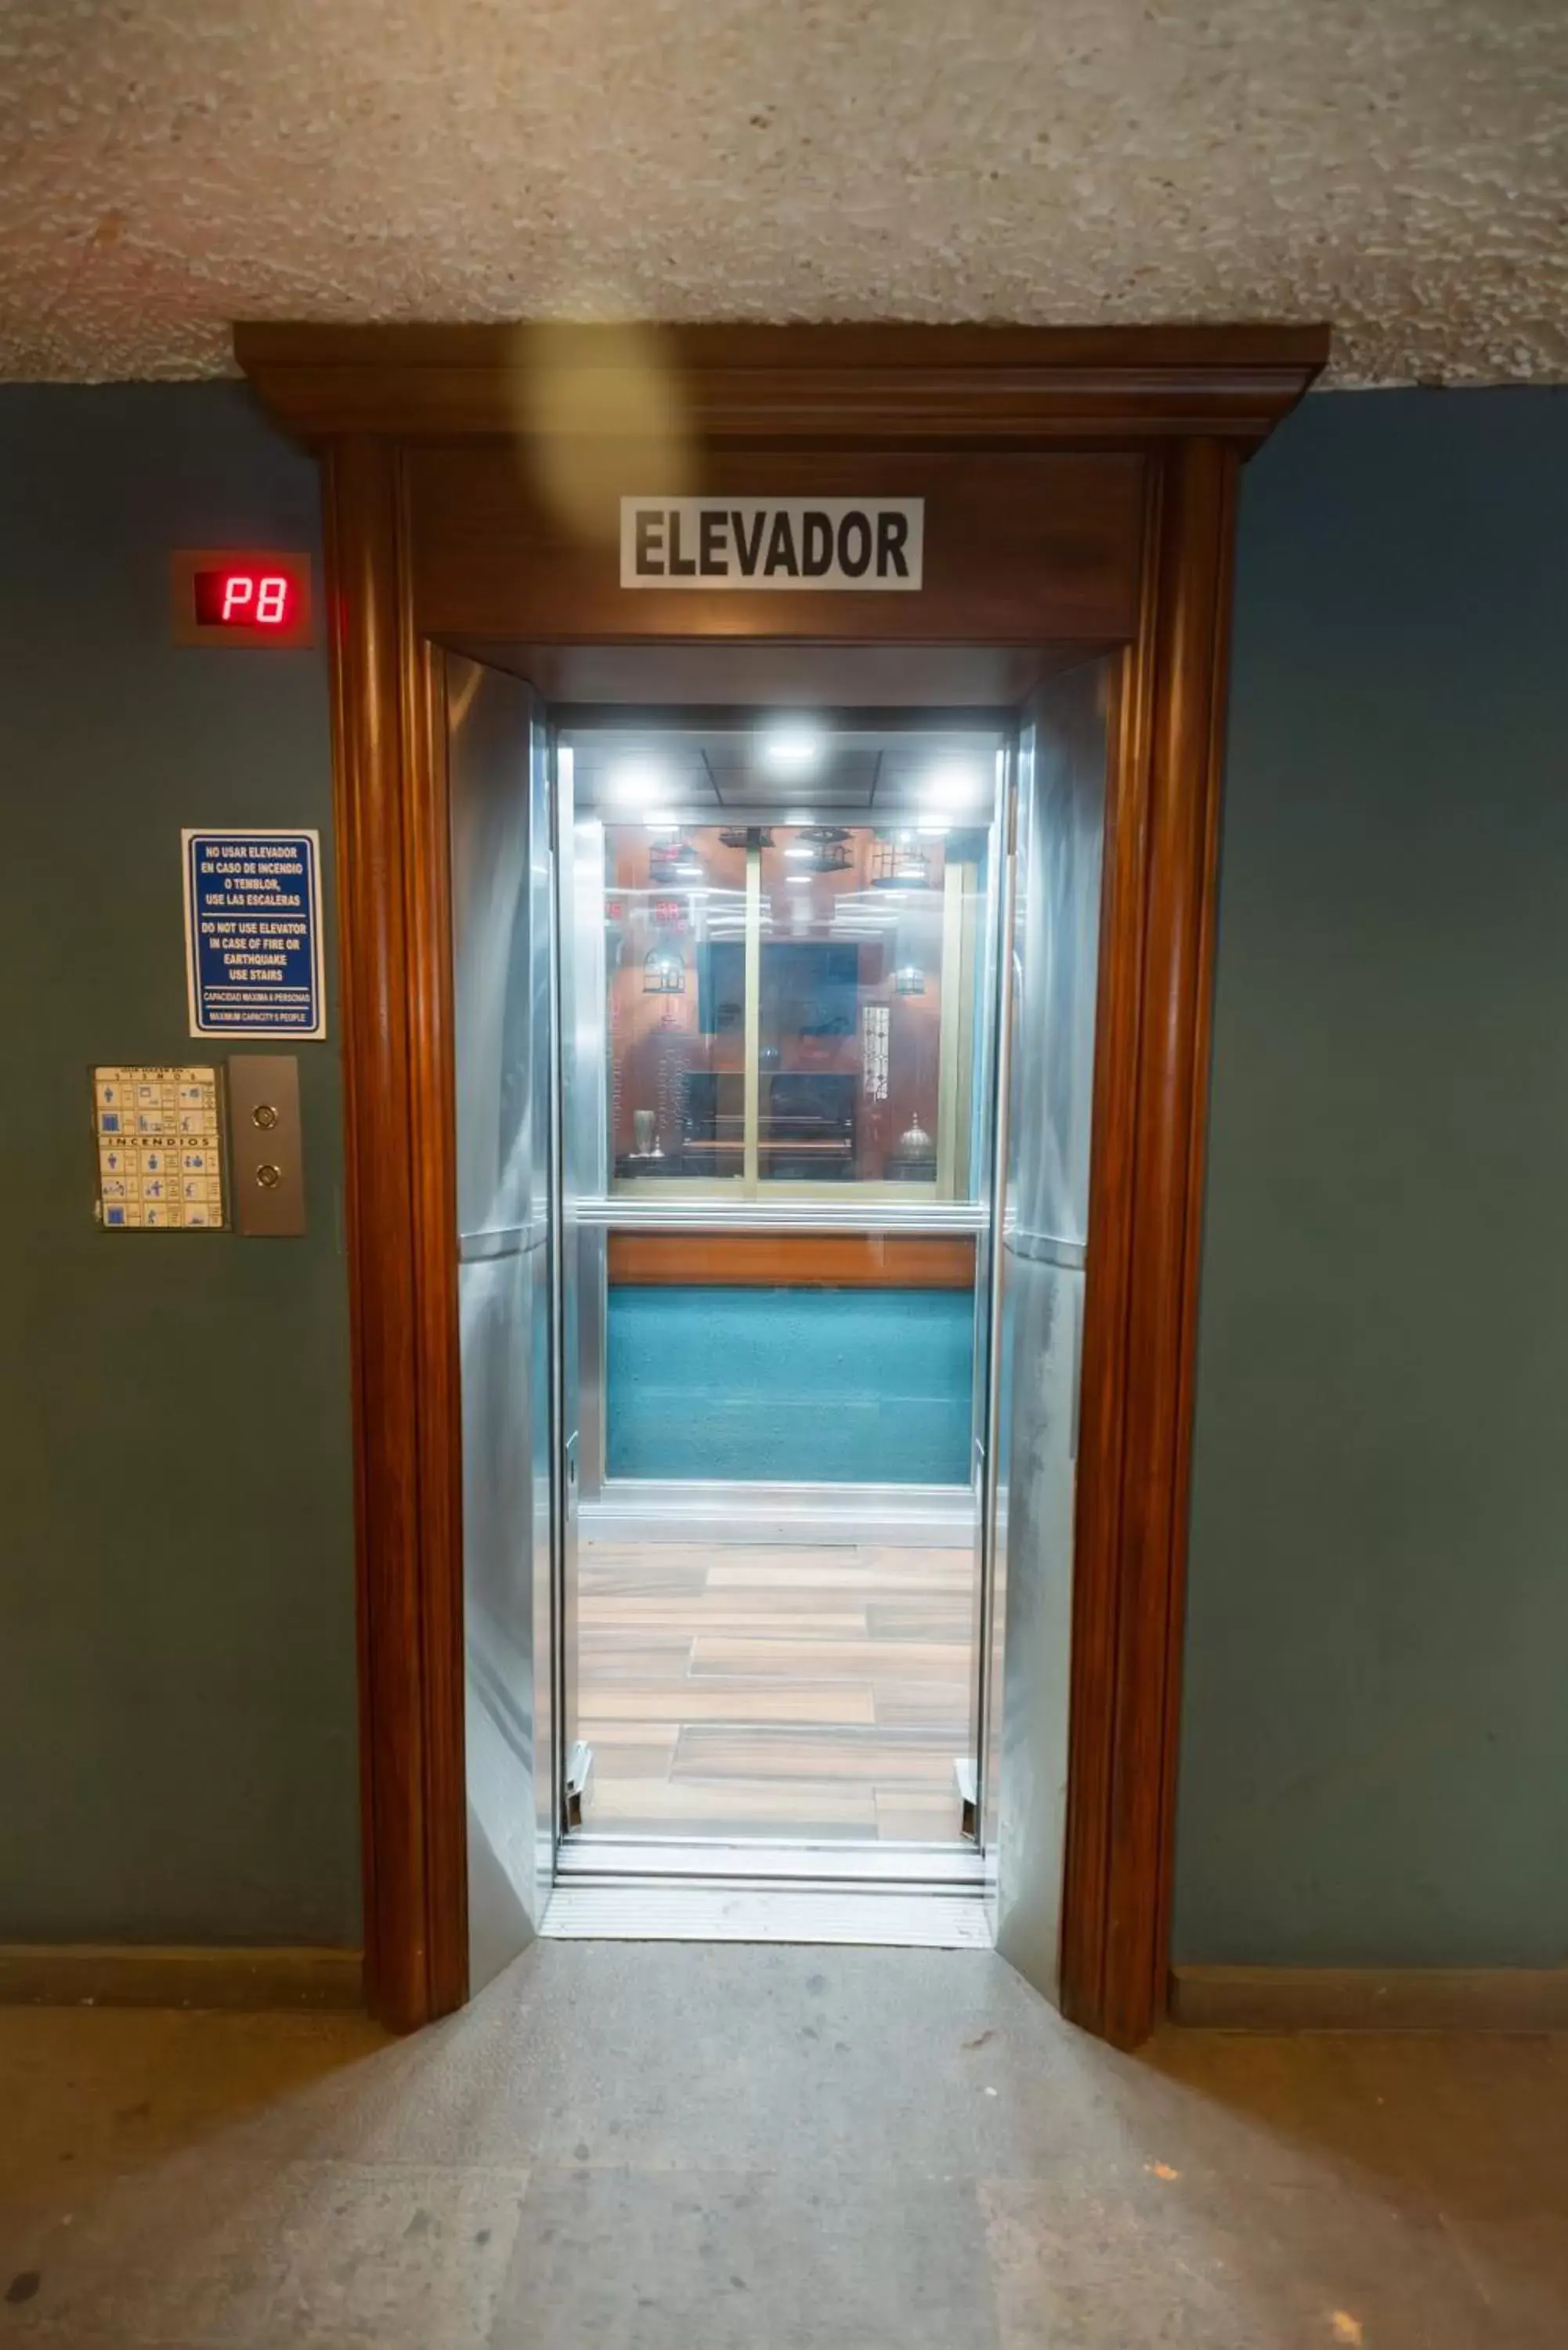 elevator in Hotel Santiago De Compostela - Guadalajara Centro Historico